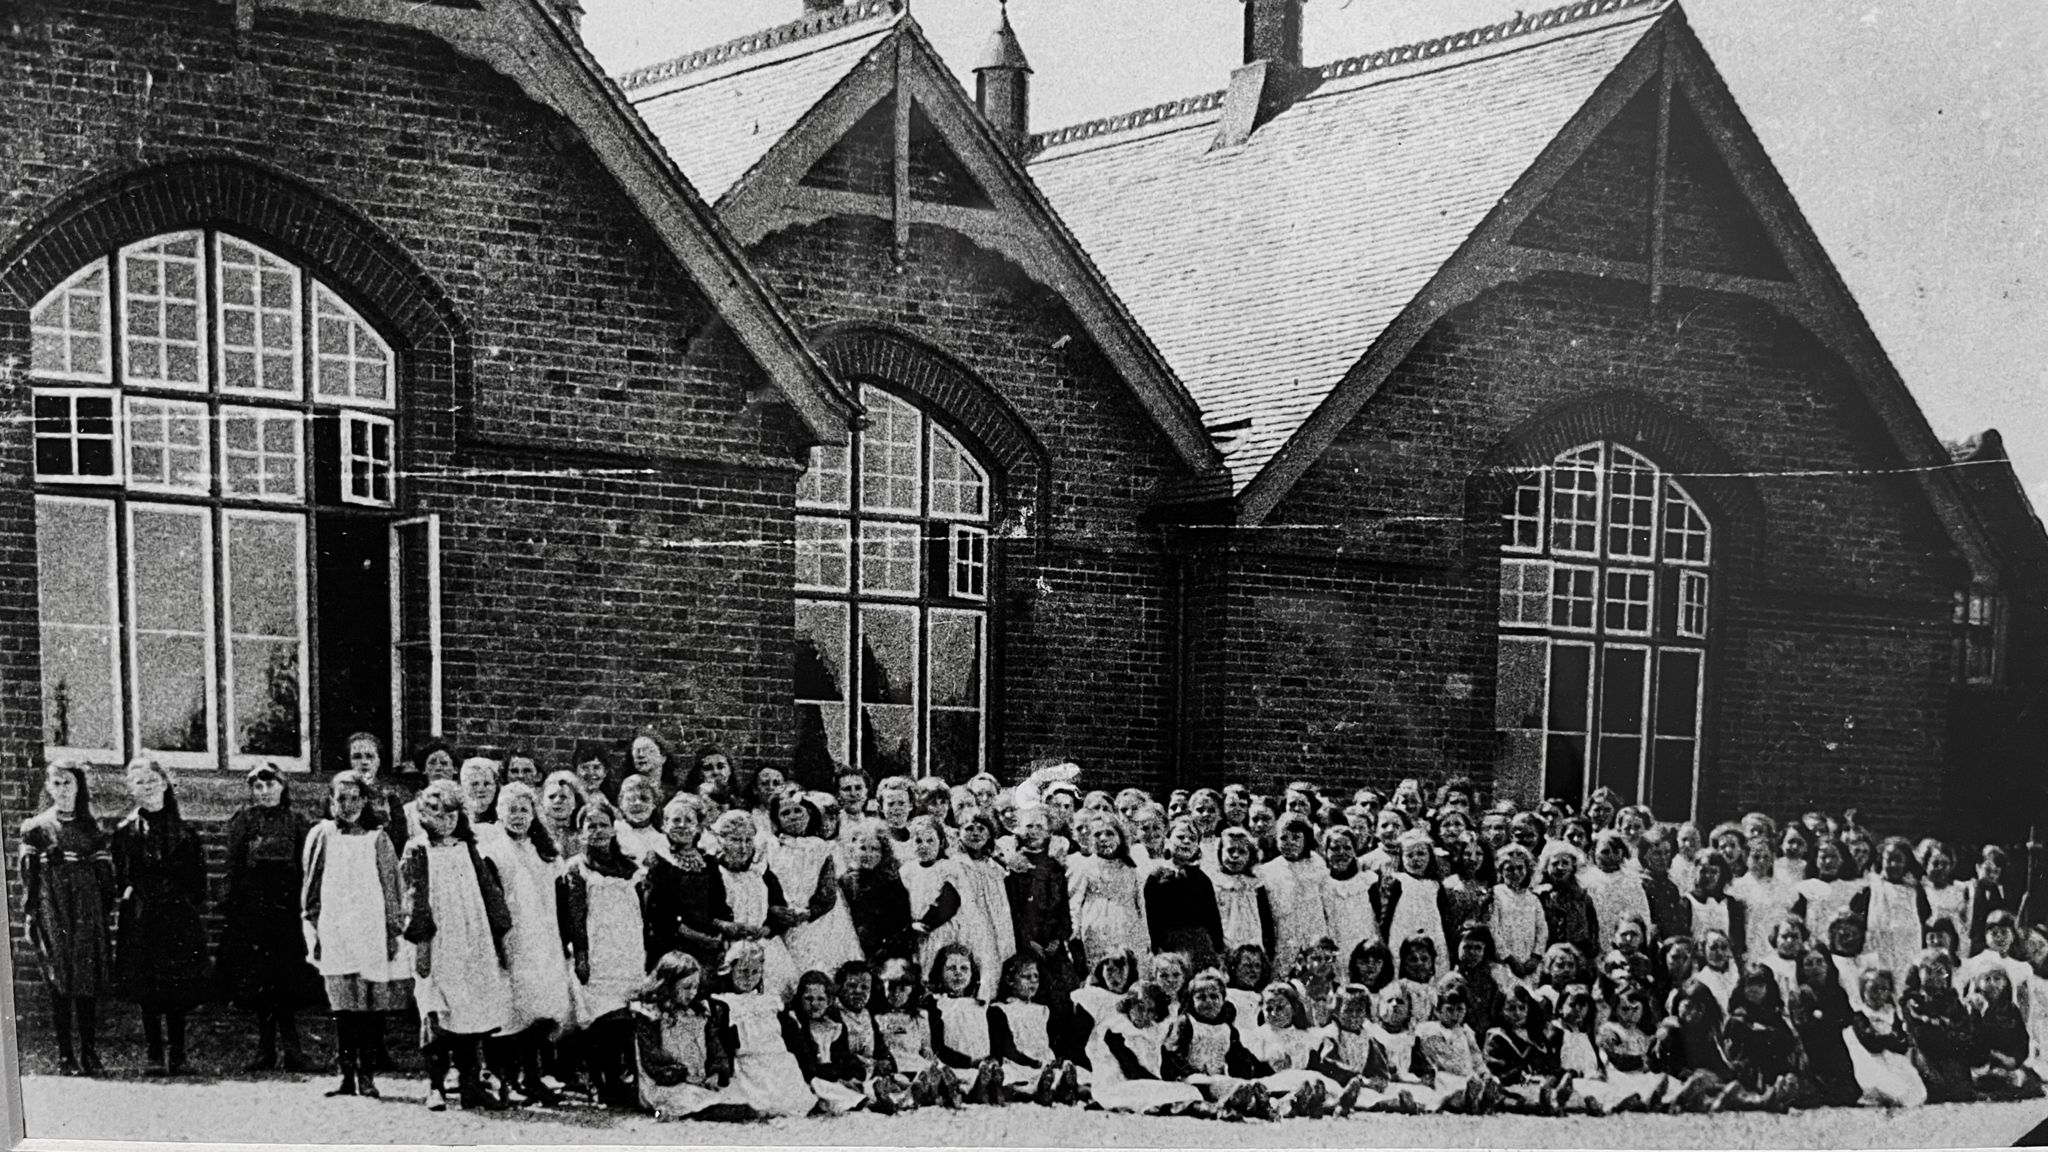 Tollesbury Primary School archive photo